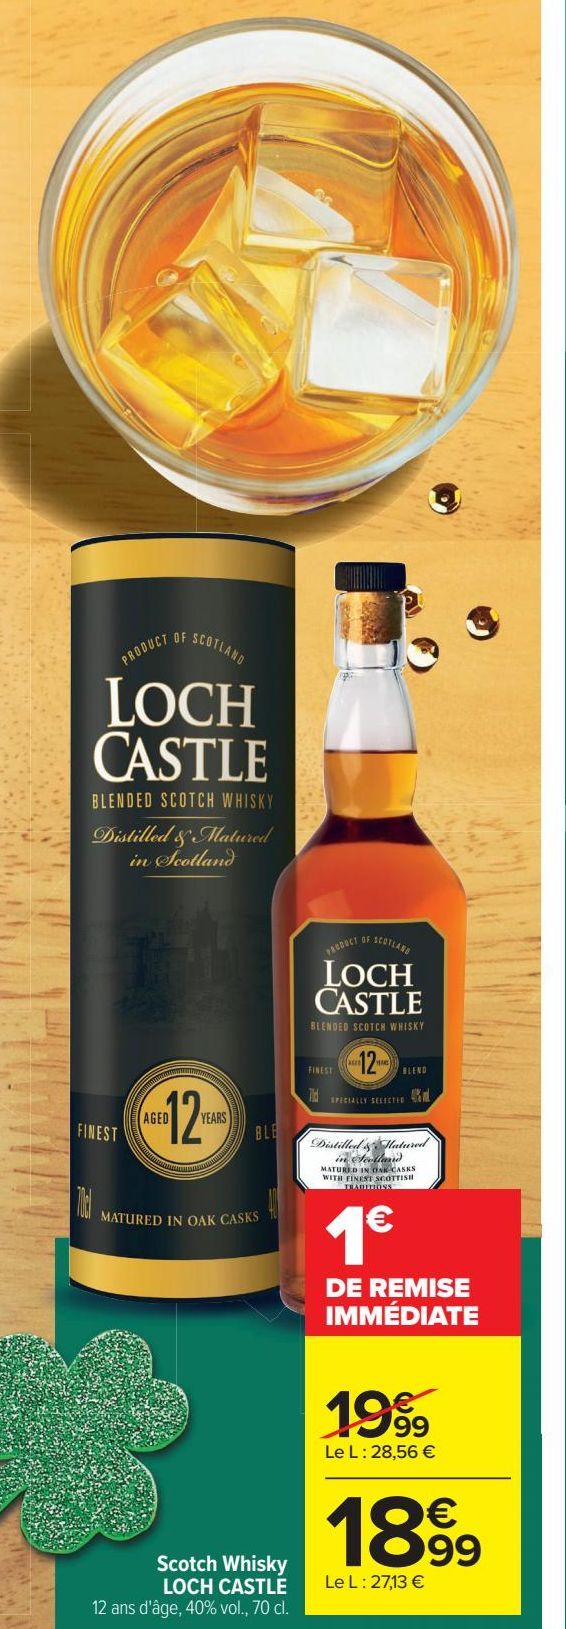 Scotch whisky LOCH CASTLE